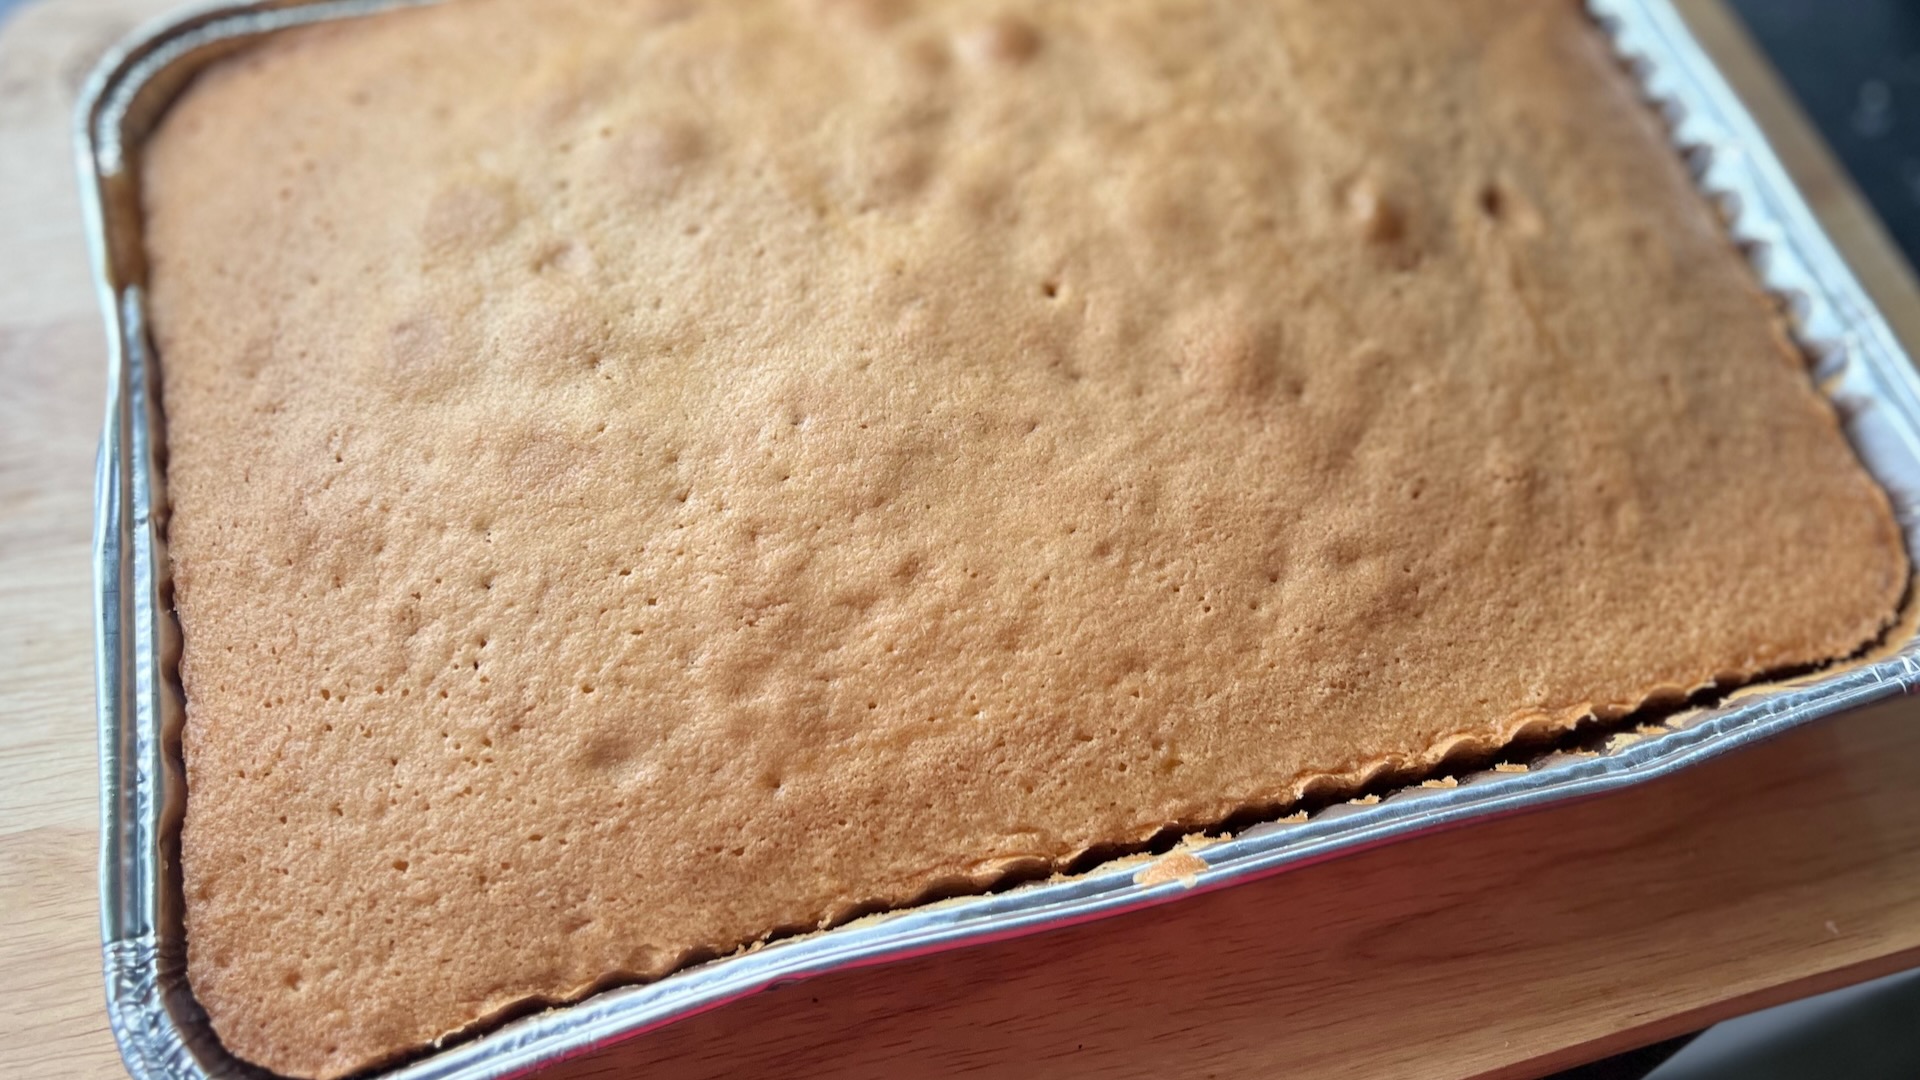 basic sponge tray bake recipe